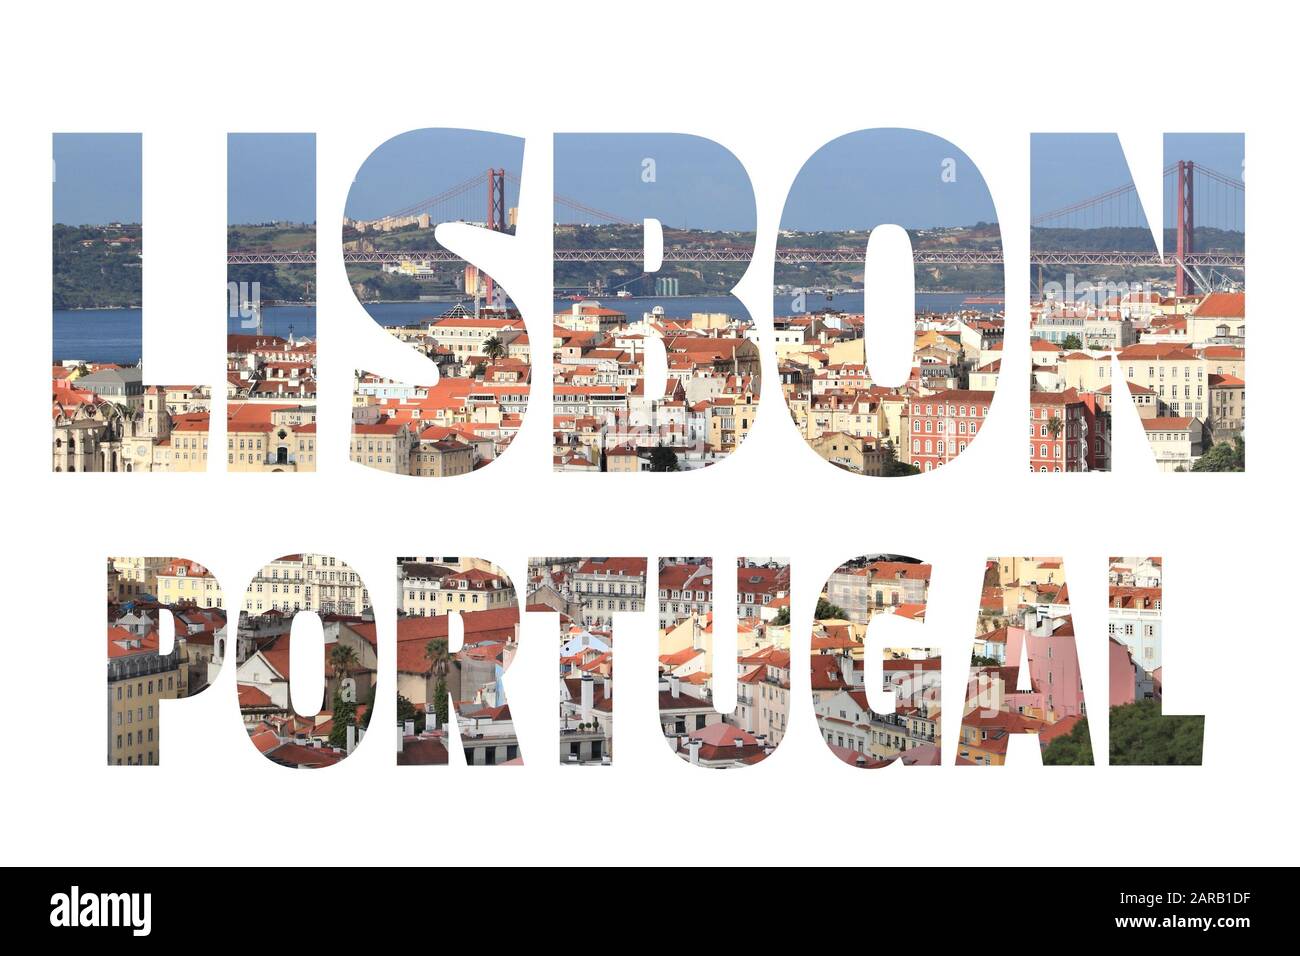 Signe de Lisbonne - Portugal capitale nom de la ville avec fond Voyage carte postale photo. Banque D'Images